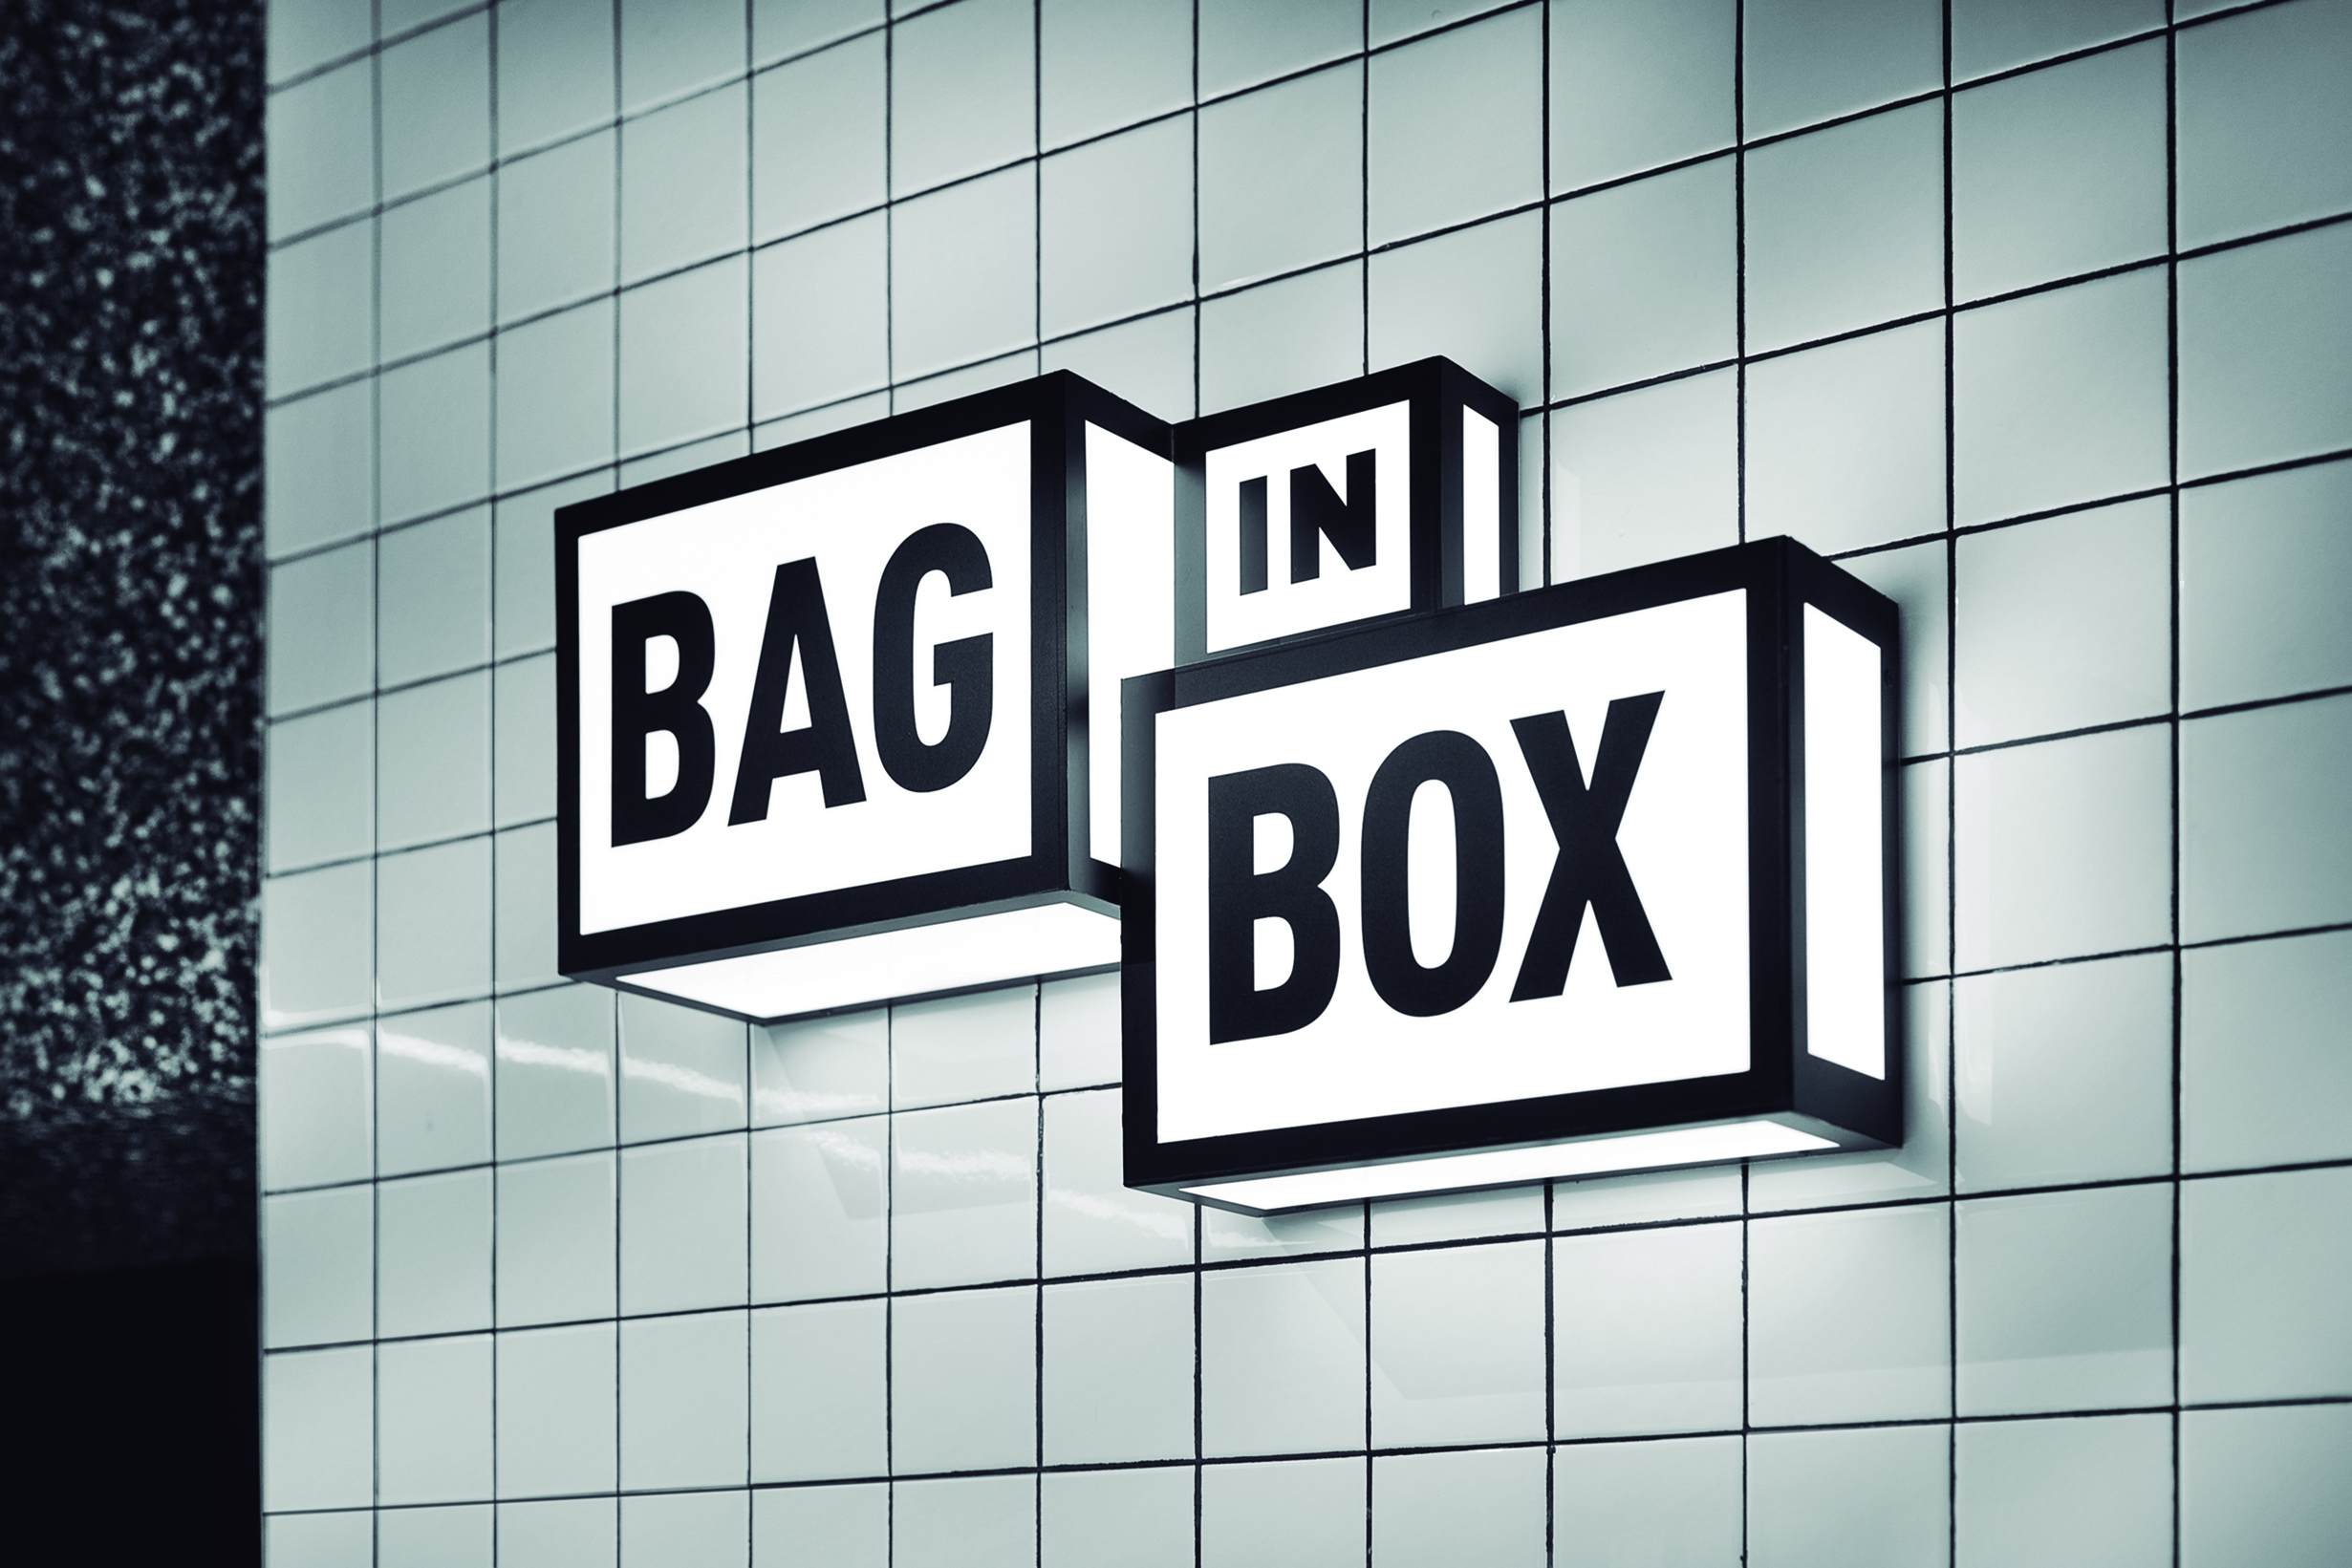 Bag in Box Urban Lockers by Wanna One - Creative Work - $i